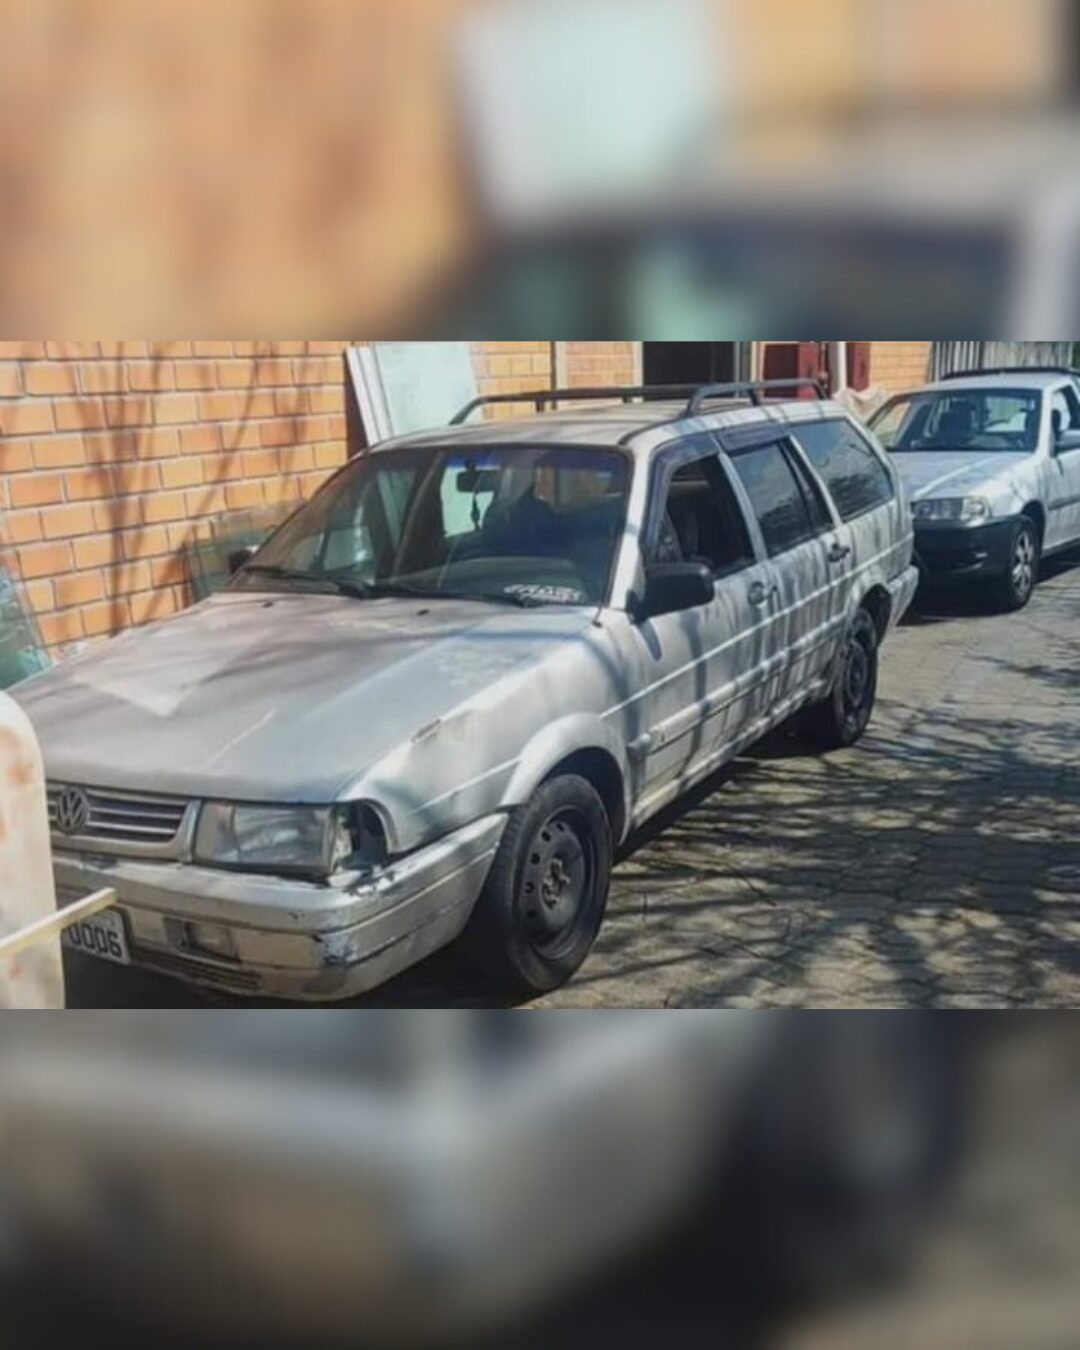 Morador do bairro Thomaz Coelho pede ajuda para encontrar carro roubado